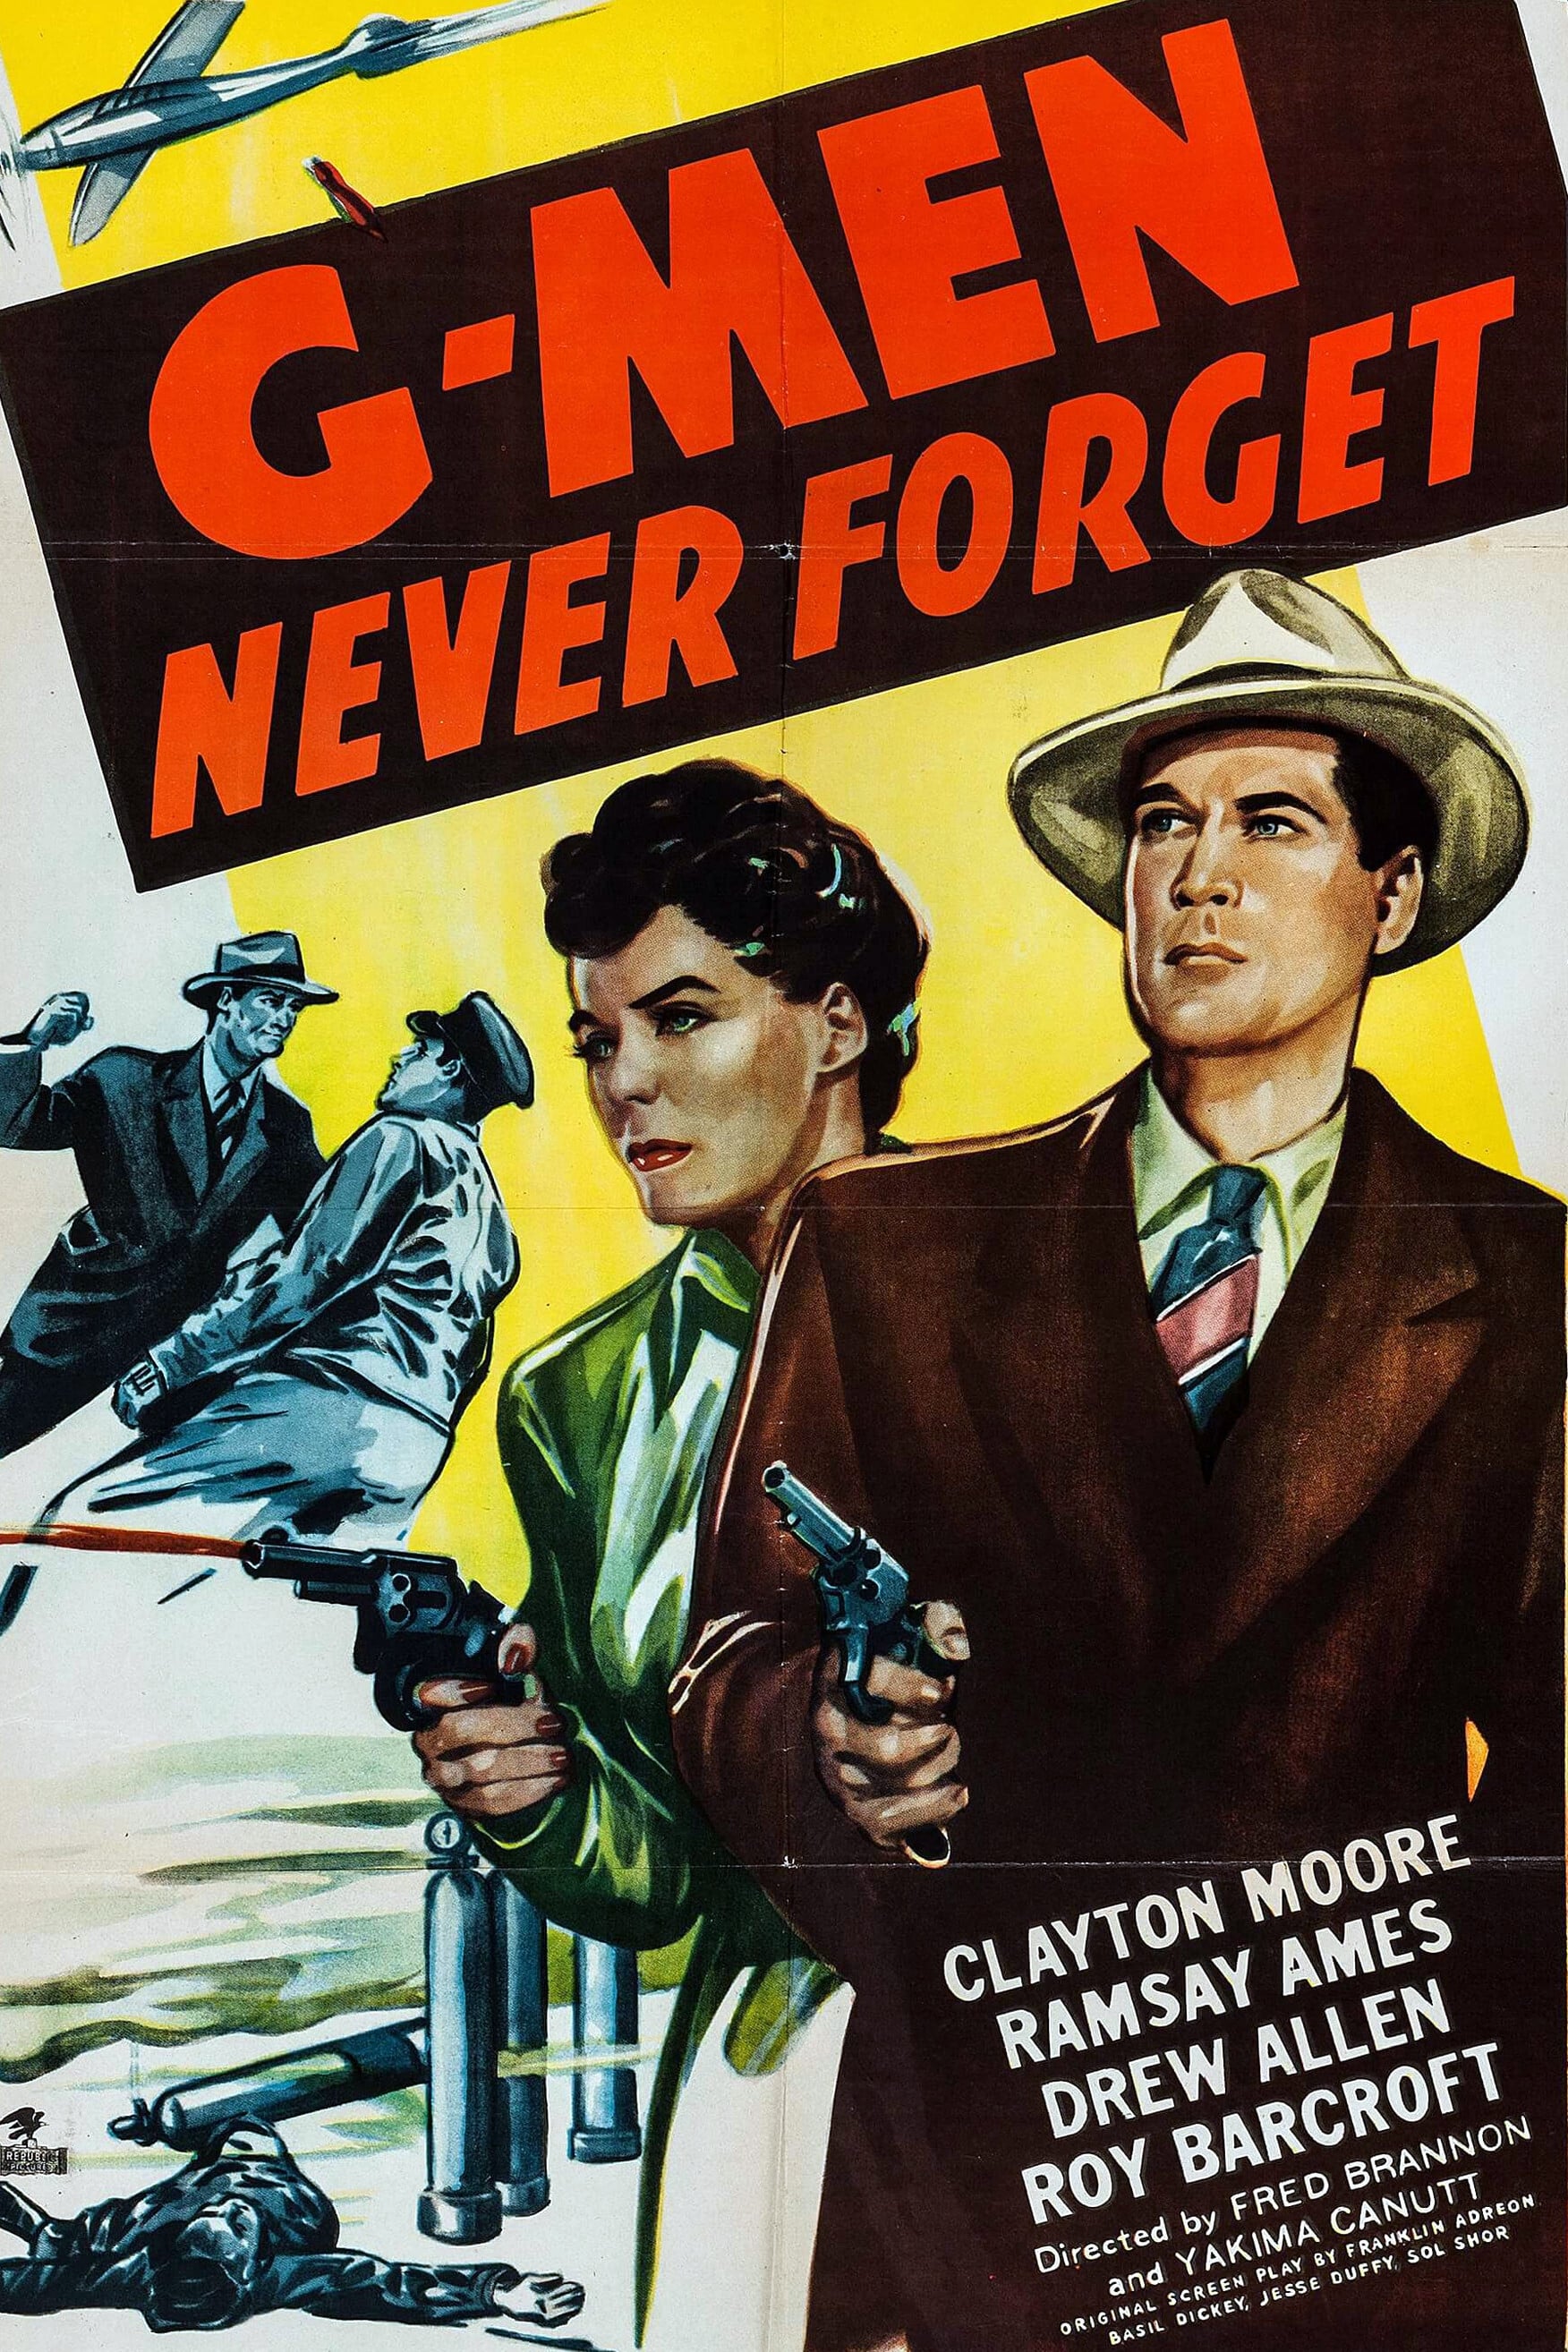 G-Men Never Forget (1948)